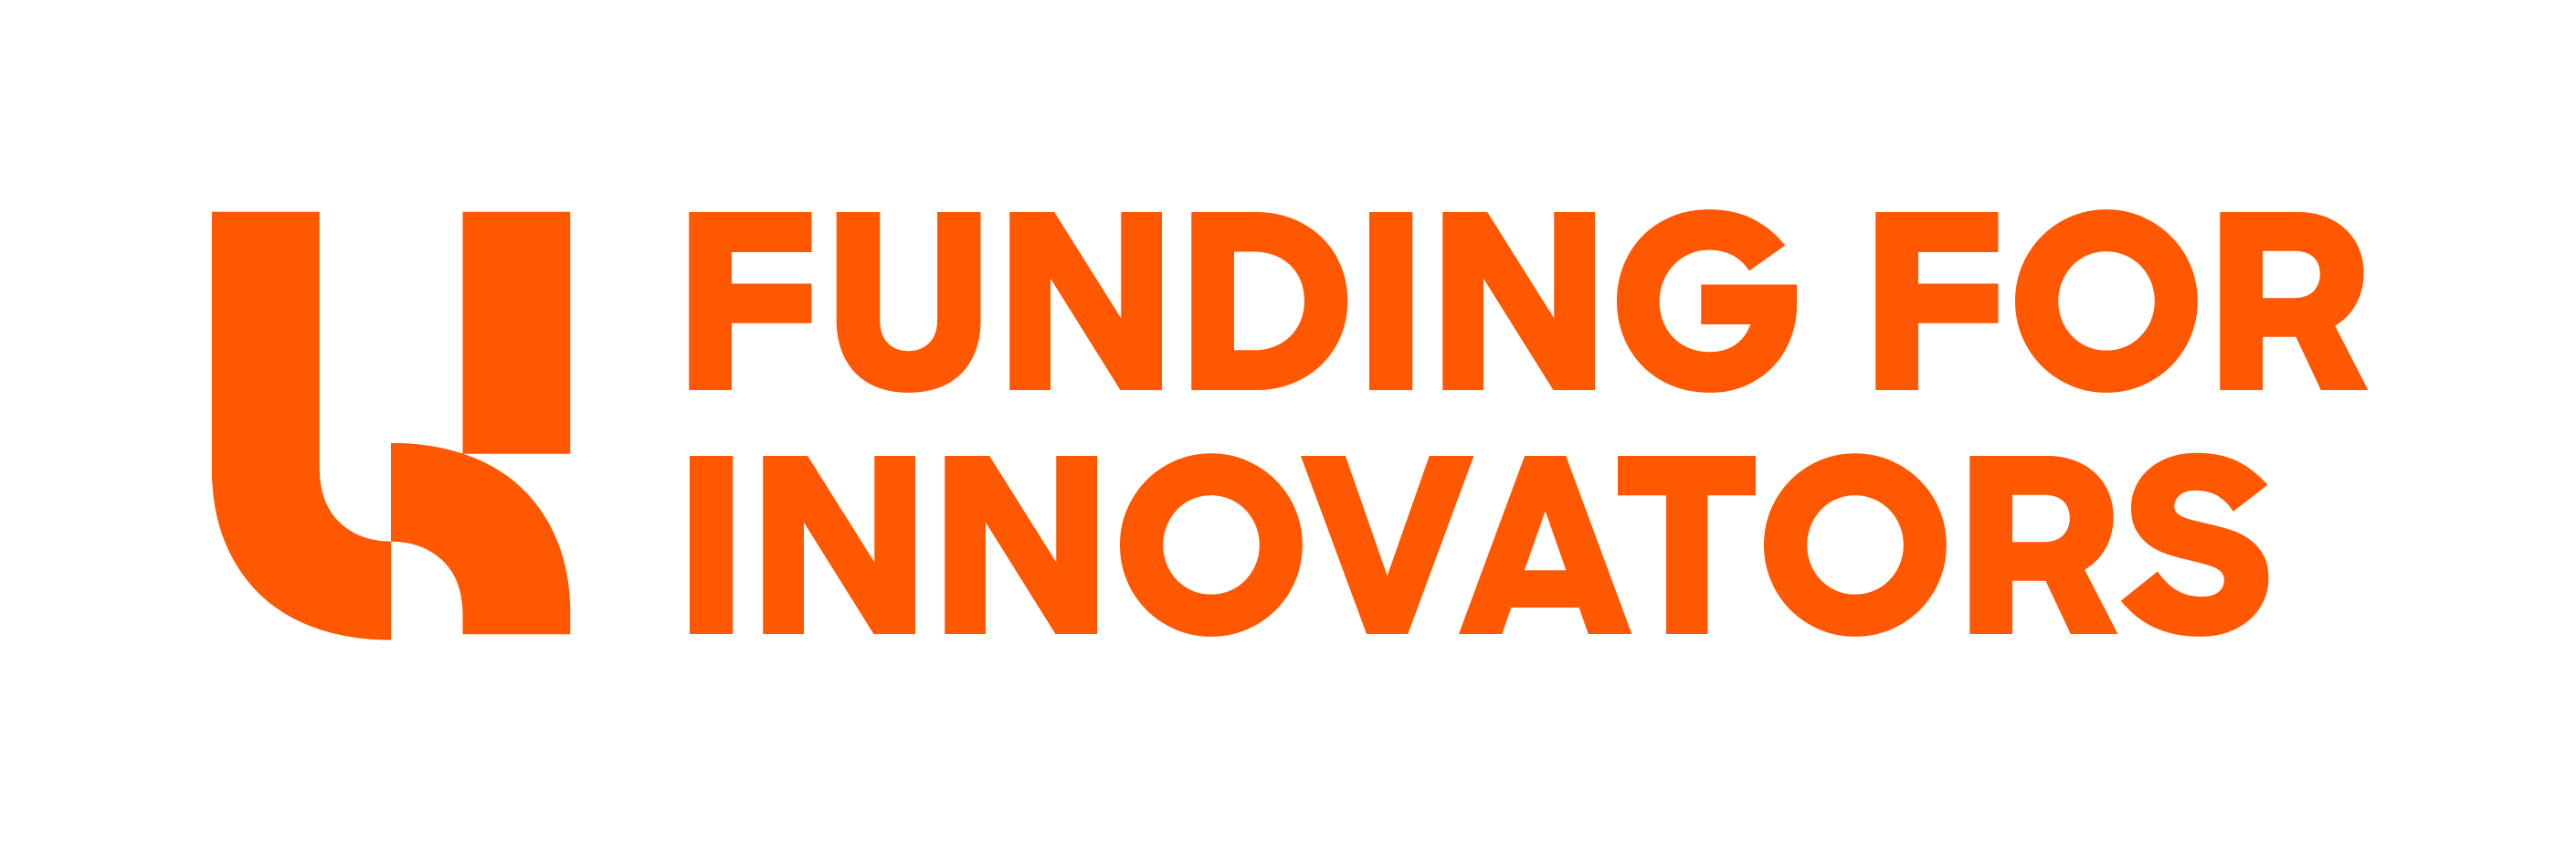 funding for innovators logo